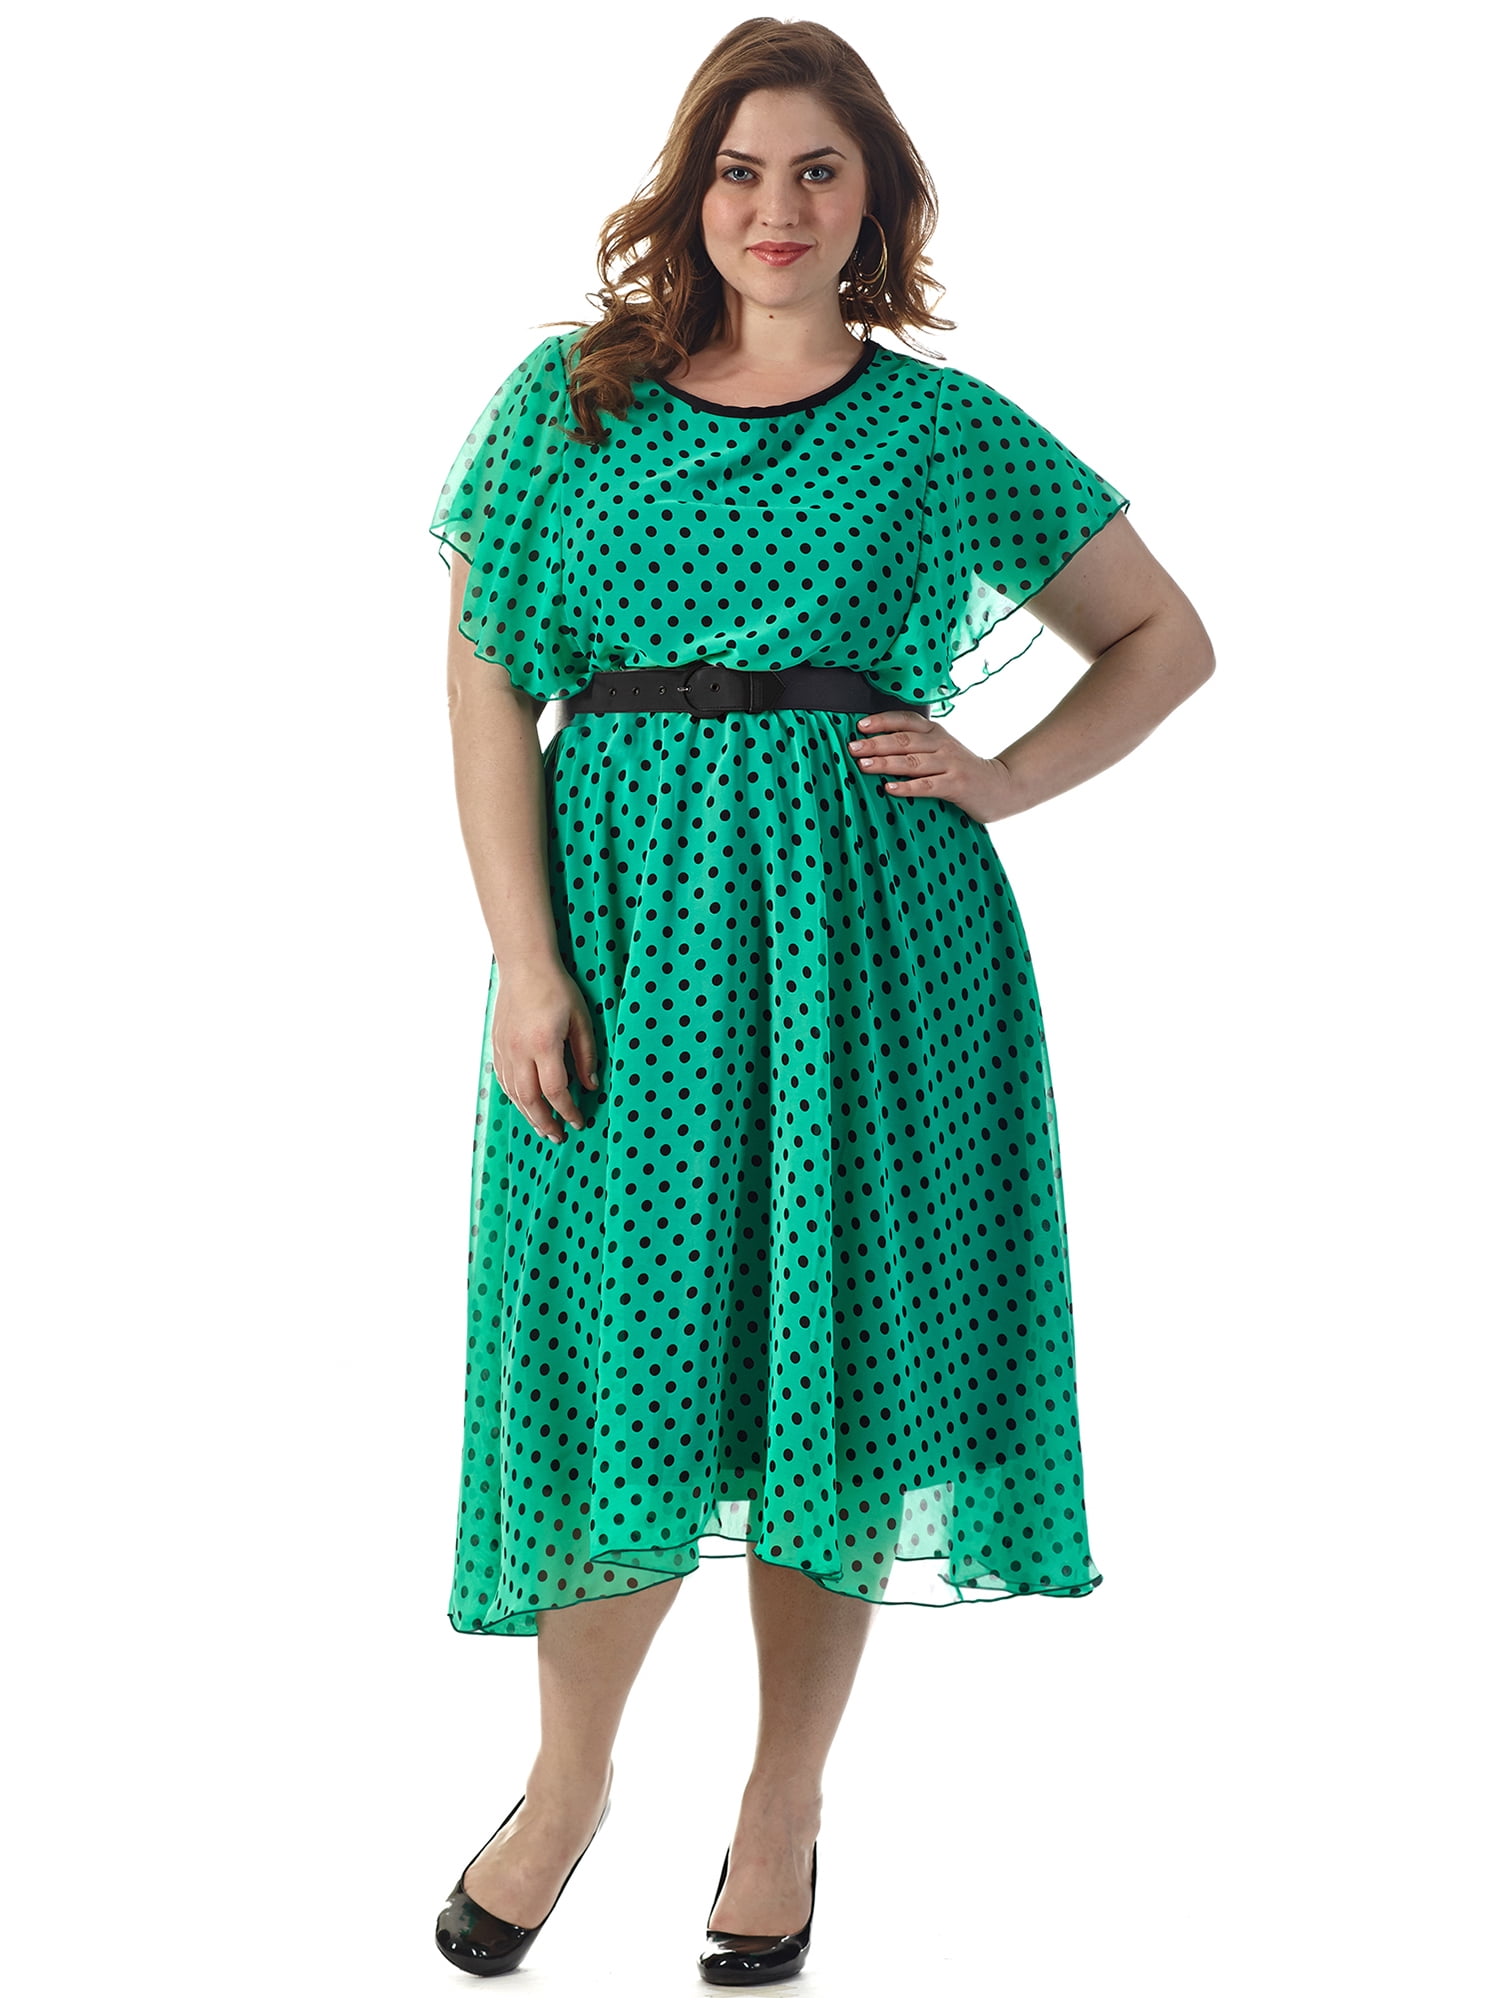 plus size green polka dot dress